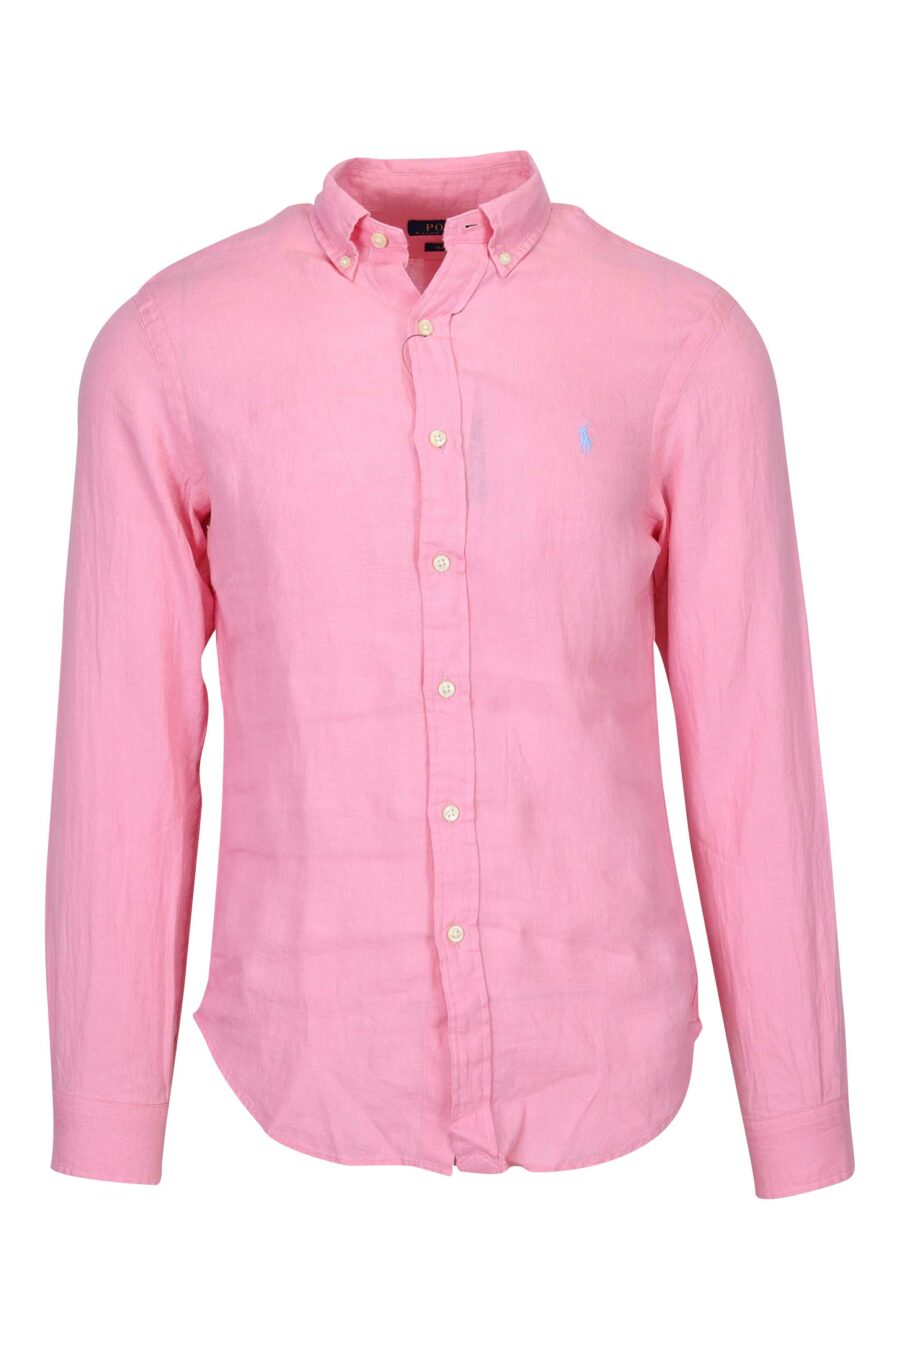 Camisa rosa con minilogo "polo" - 3616535874473